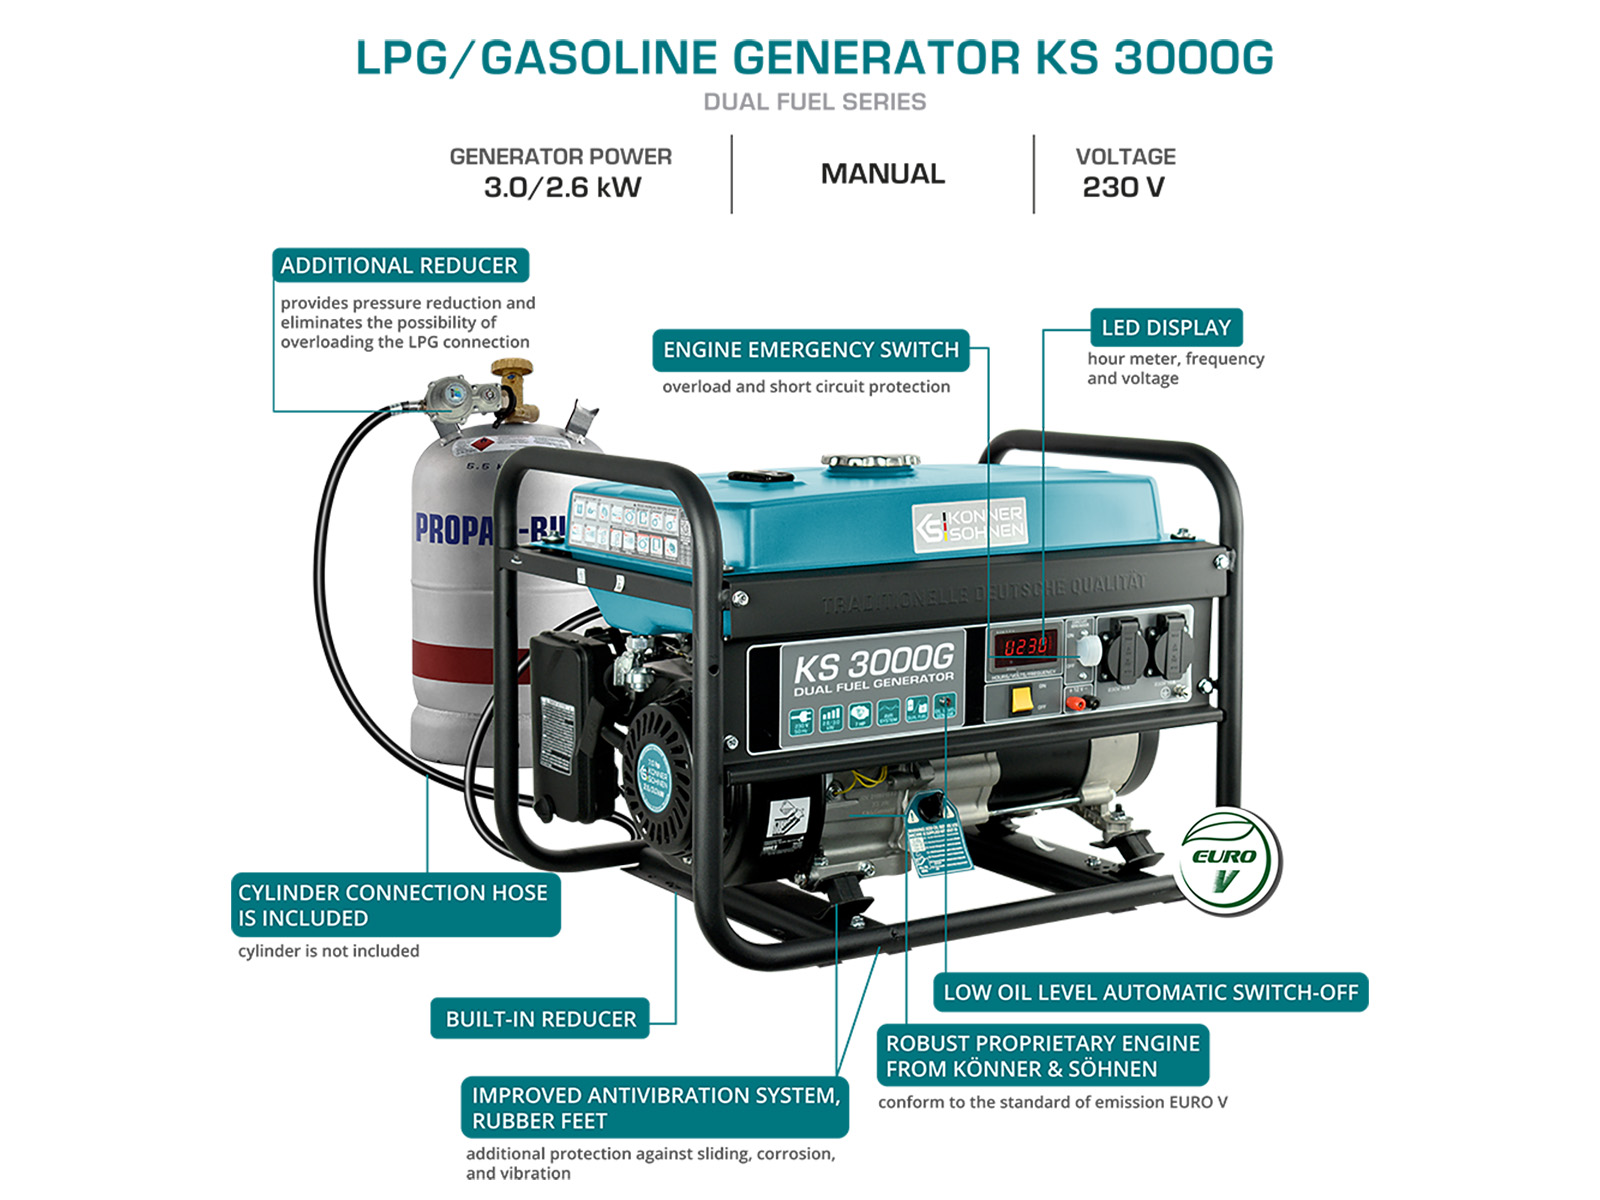 LPG/Gasoline Generator "Könner & Söhnen" KS 3000G